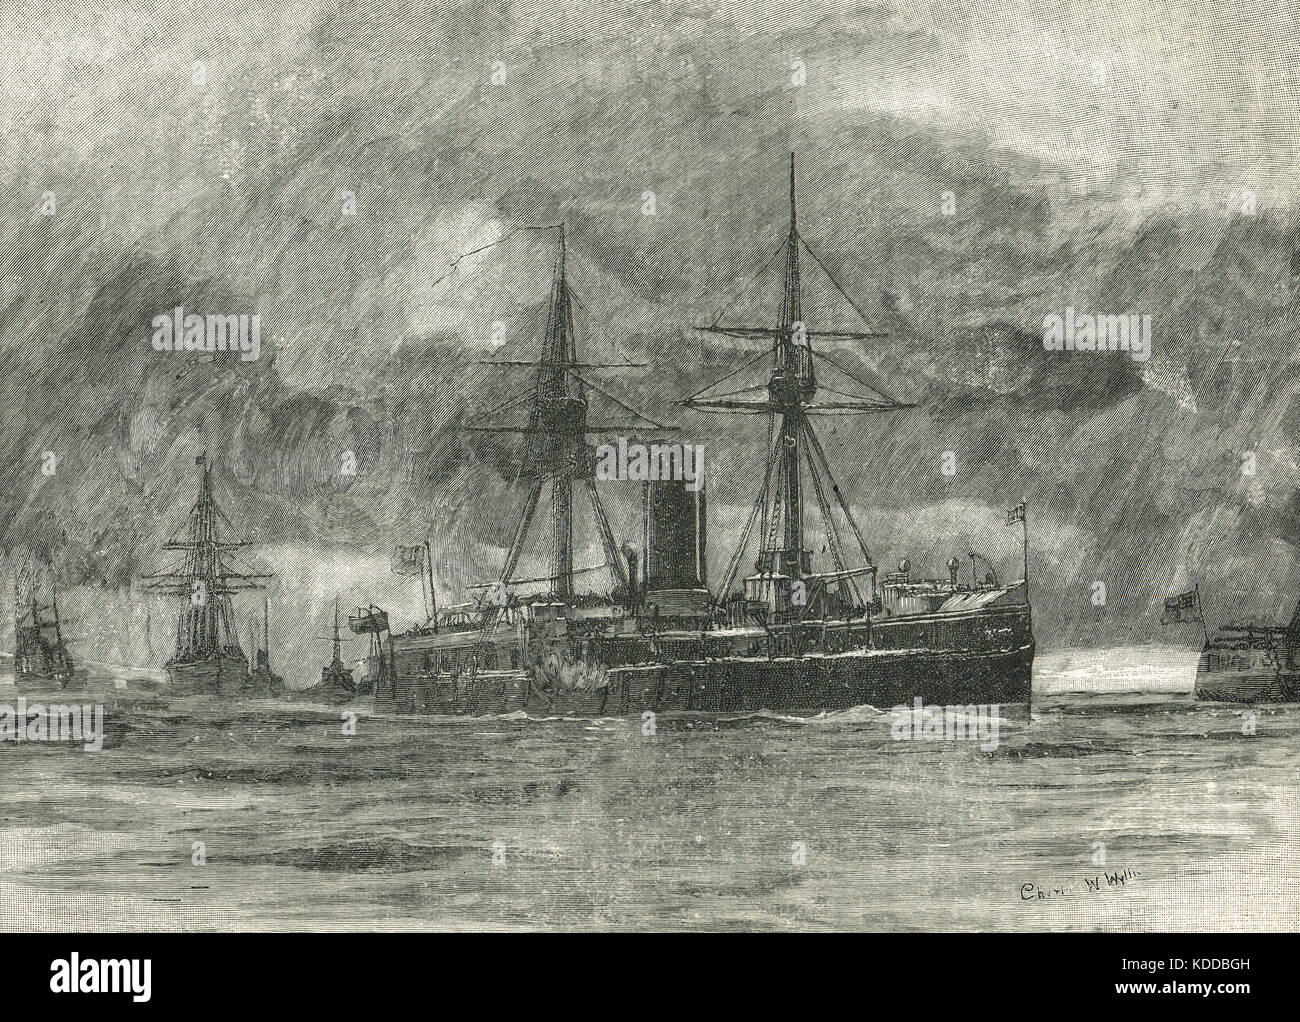 Los buques de la flota británica en los Dardanelos. El escuadrón mediterráneo el tránsito de los Dardanelos, el 14 de febrero de 1878. una demostración de fuerza ordenadas por disraeli, durante la guerra russo-turca de 1877-1878 Foto de stock